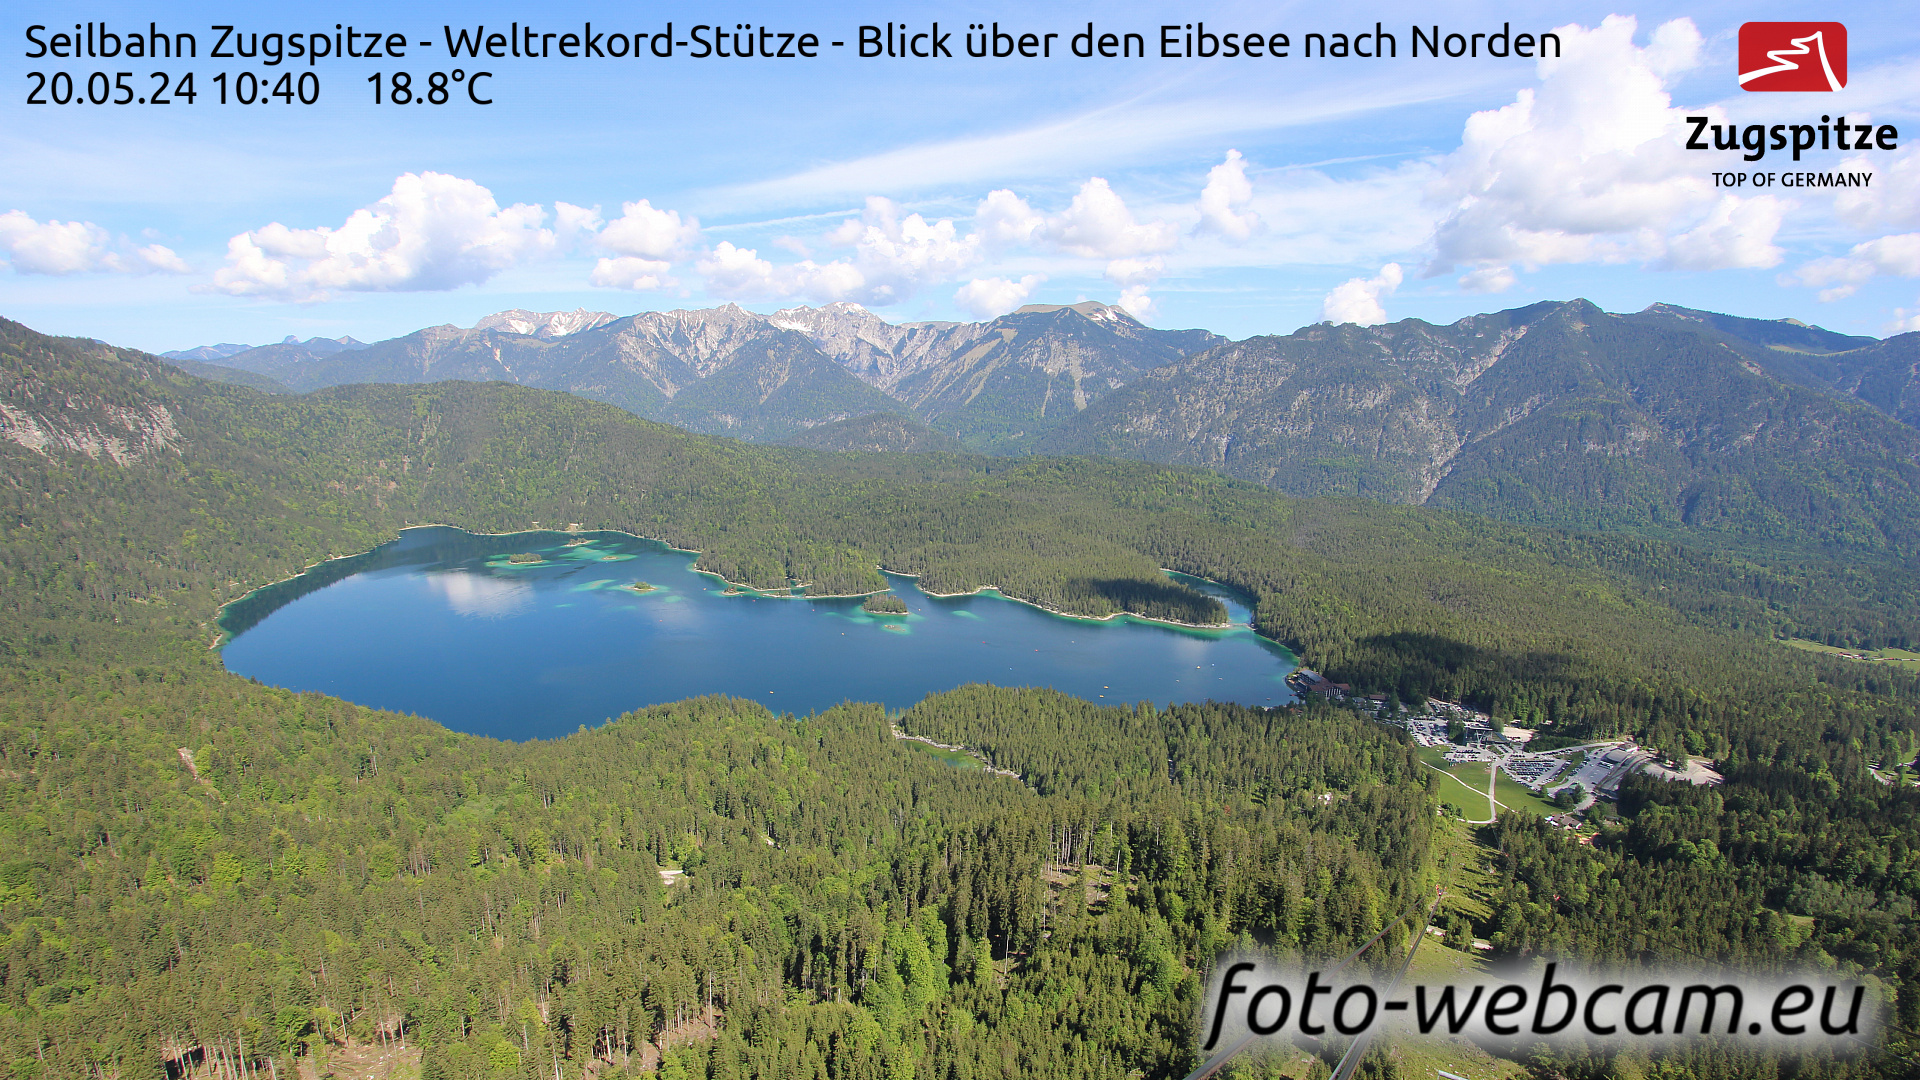 Zugspitze So. 10:49